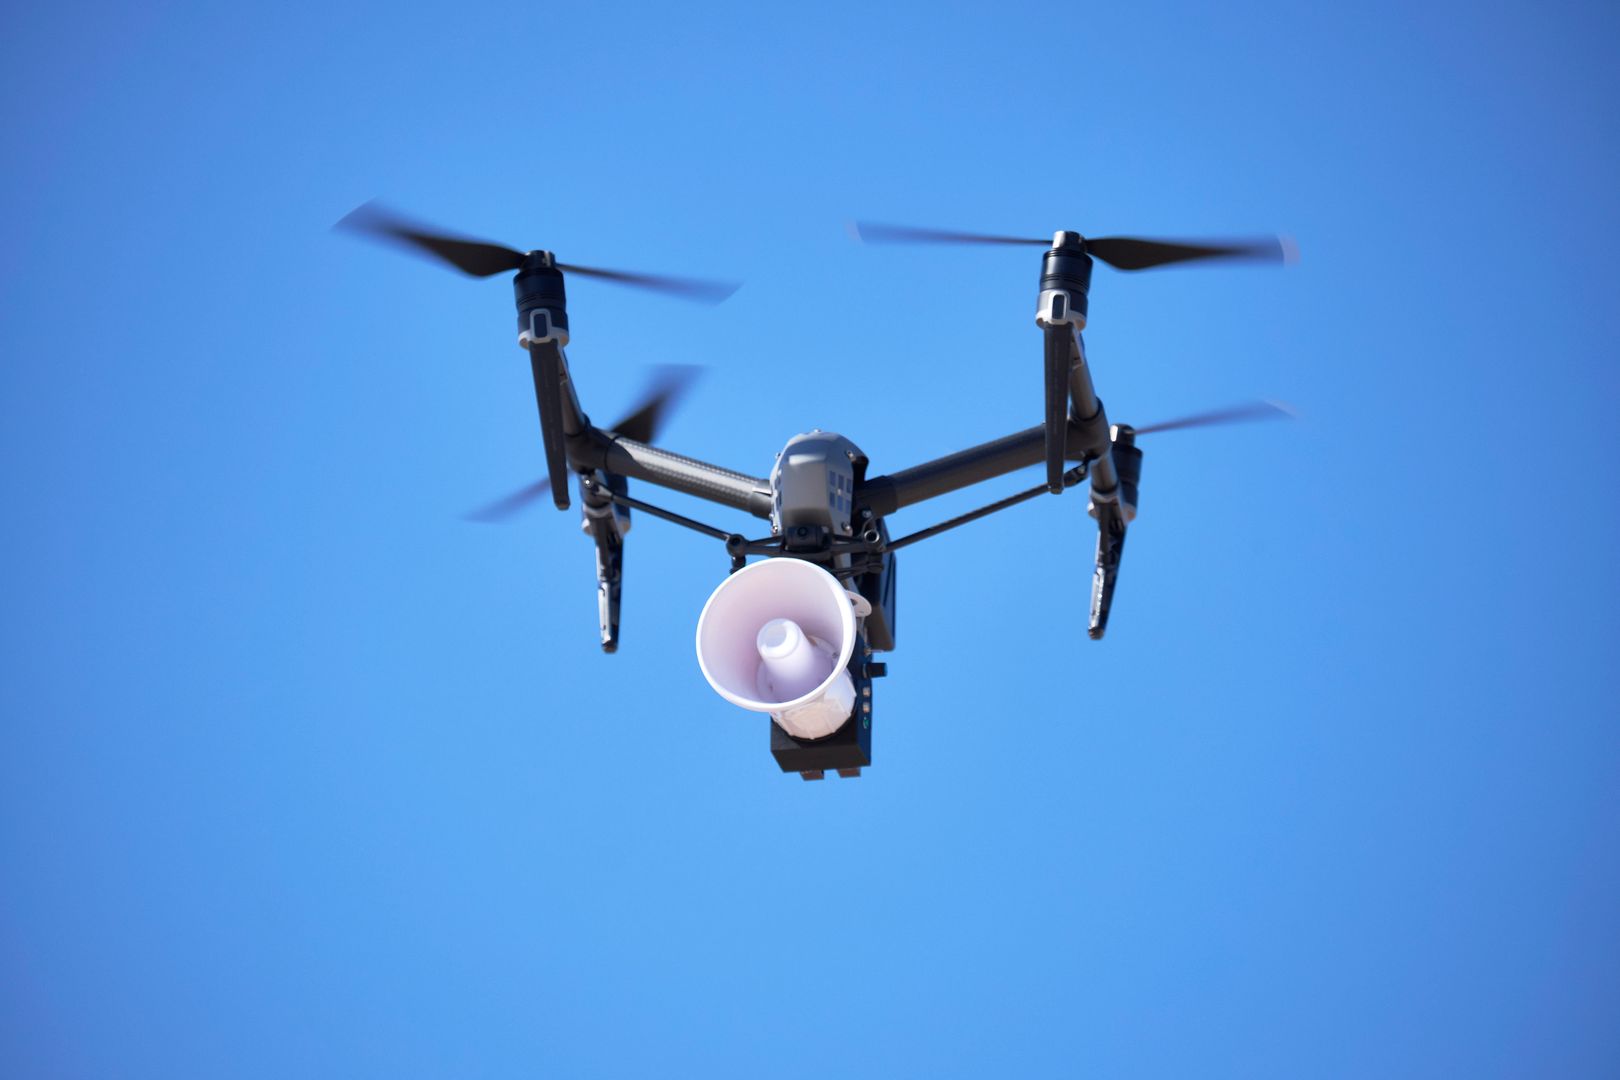 Władze jednego z włoskich miast wykorzystały drony do zwracania uwagi mieszkańcom